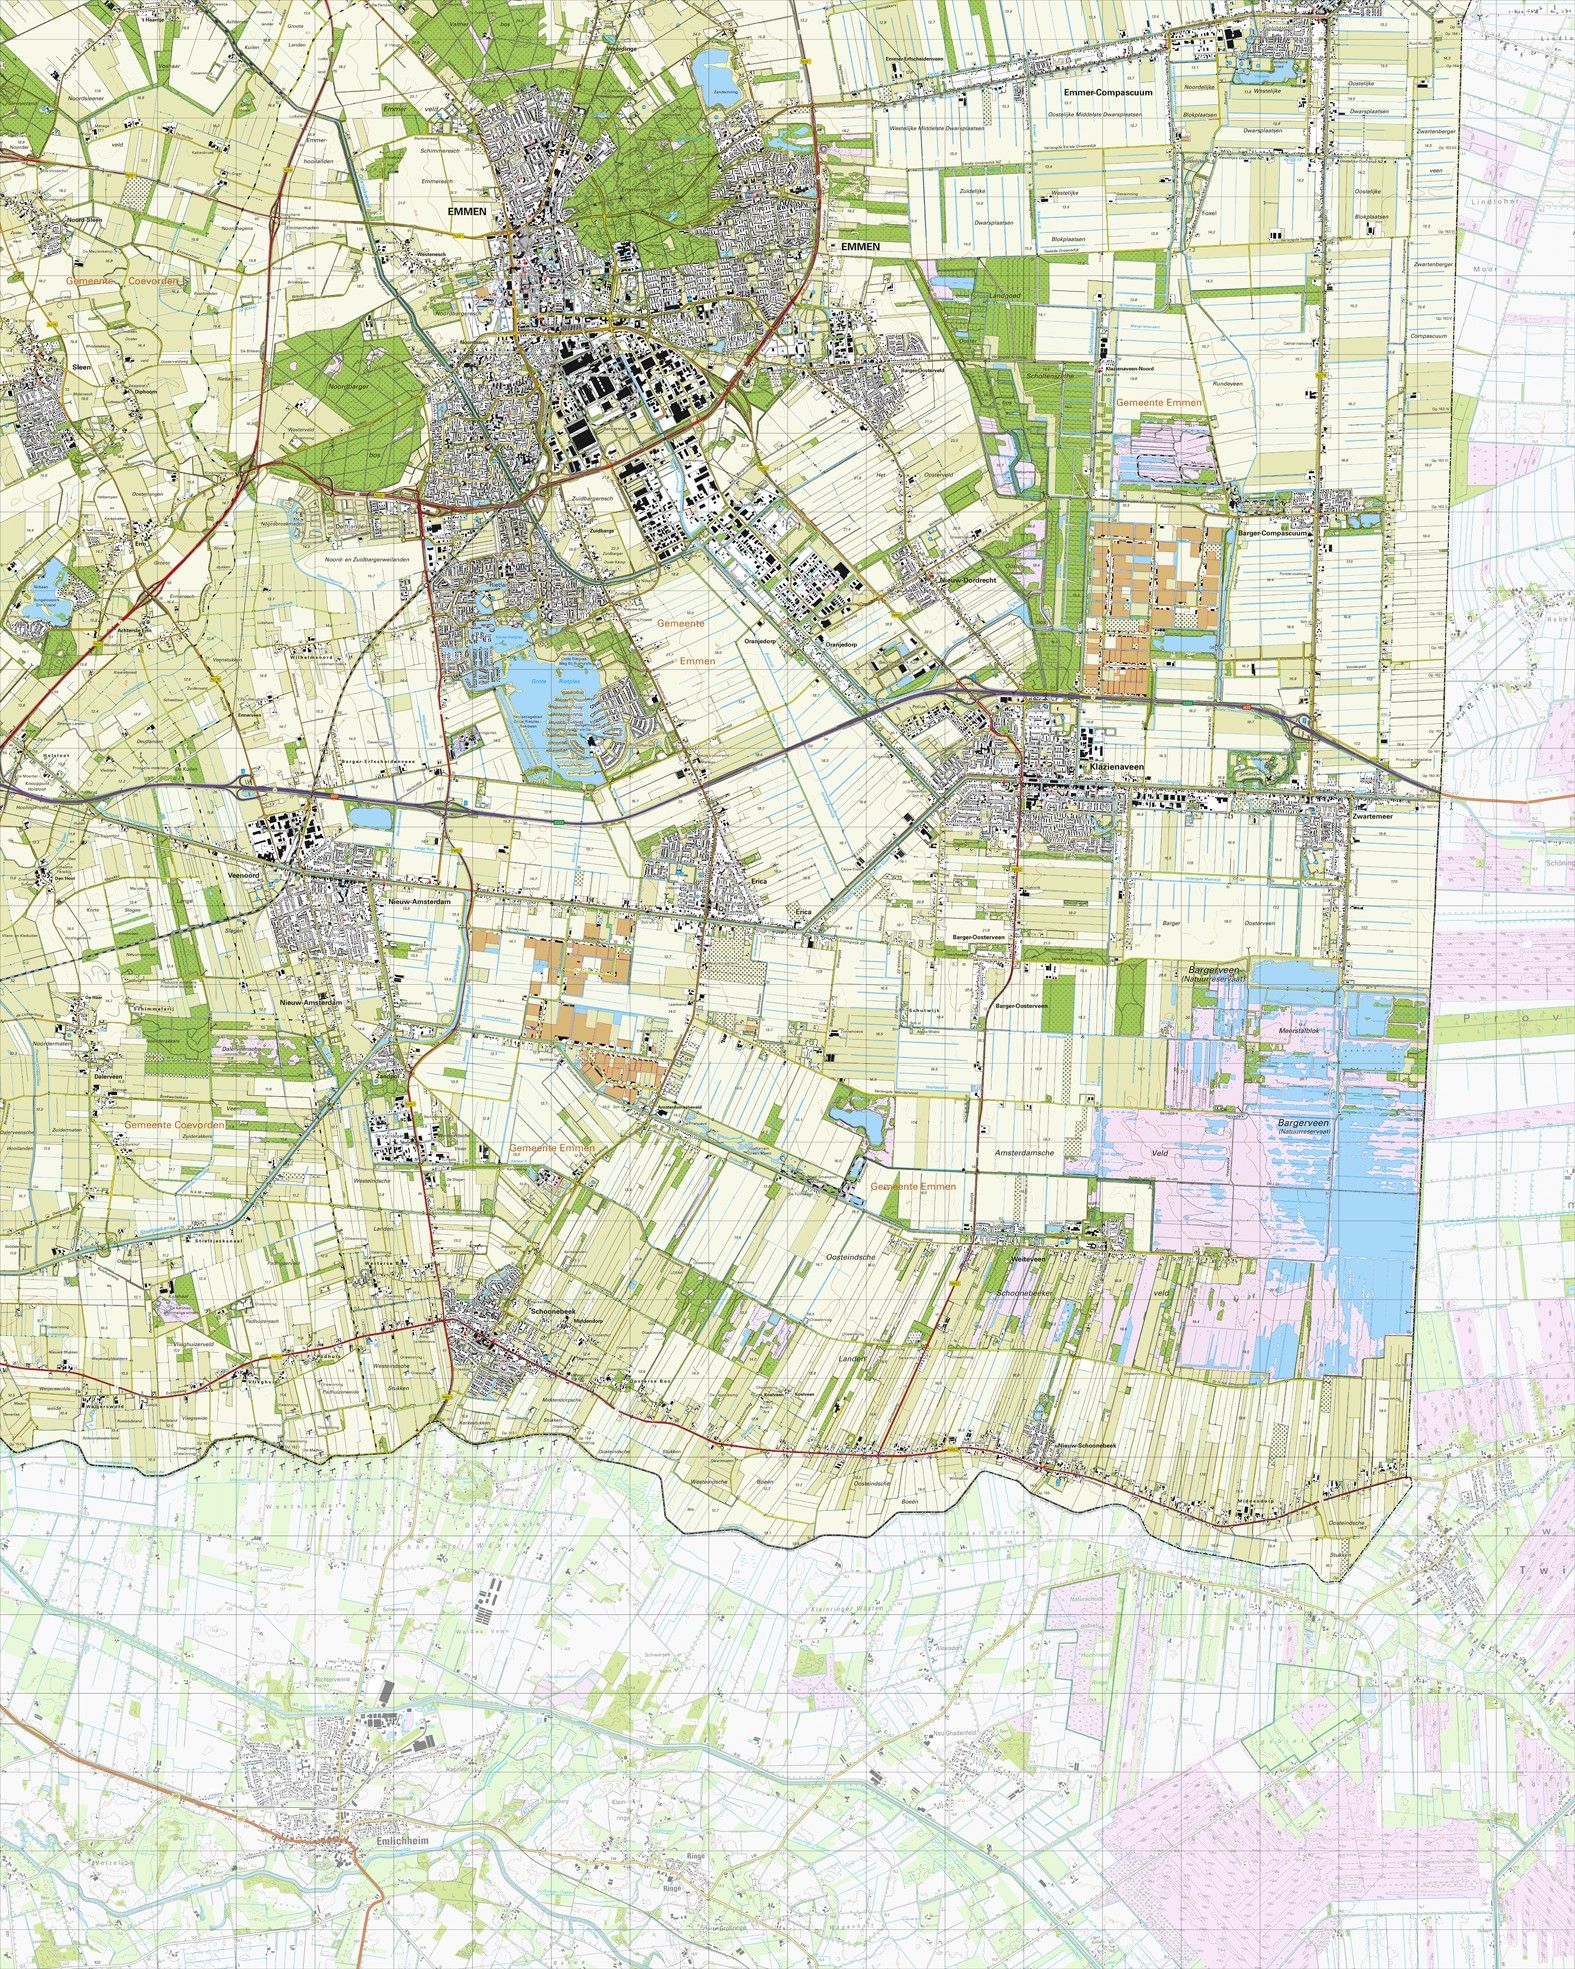 Topografische kaart schaal 1:25.000 (Emmen, Klazienaveen, Schoonebeek, Nieuw-Amsterdam)